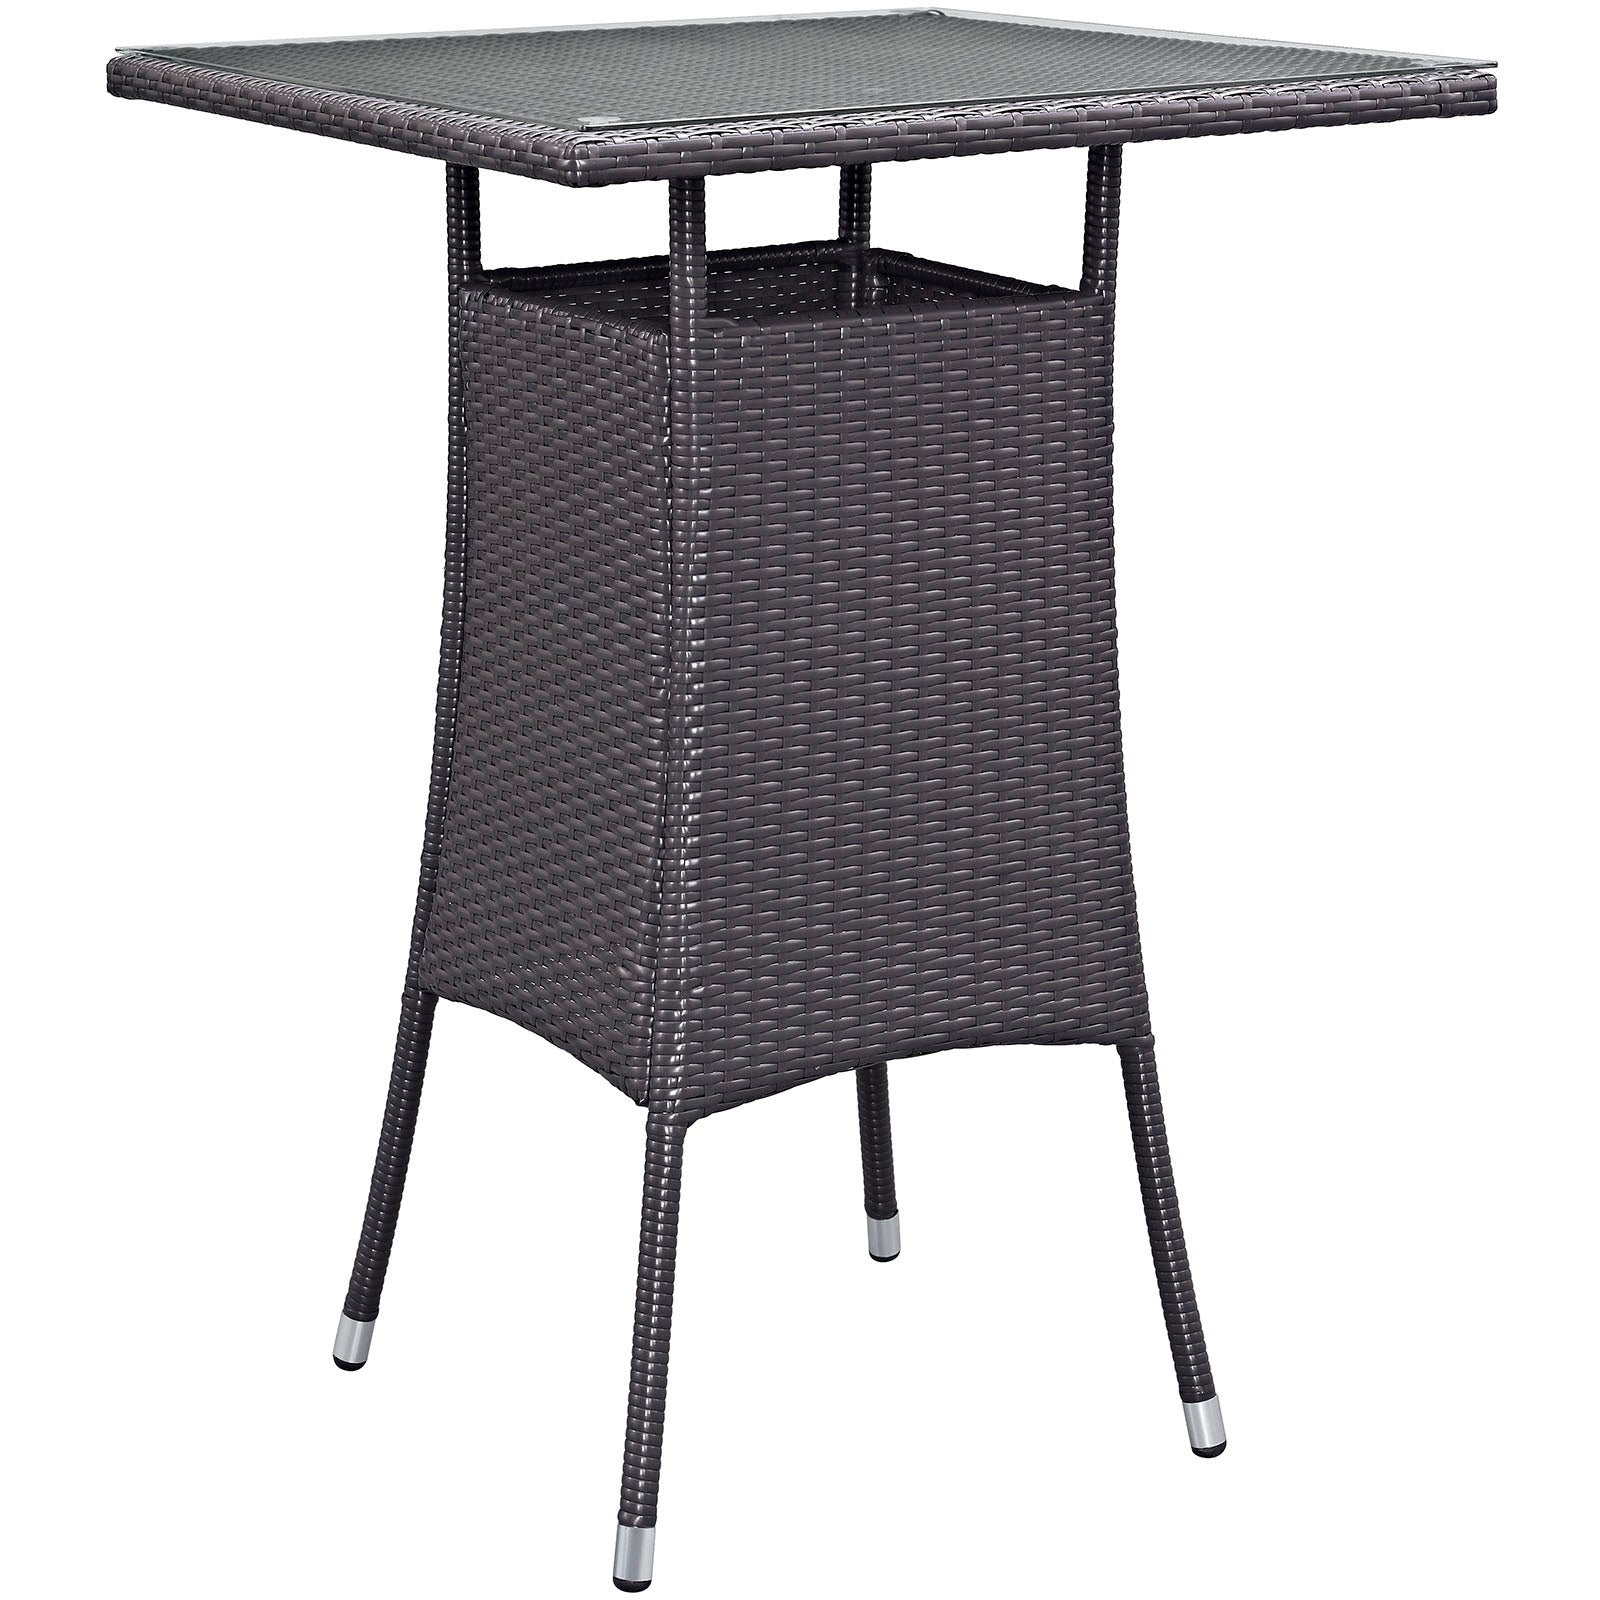 Modway Outdoor Bar Tables - Convene Small Outdoor Bar Table Espresso